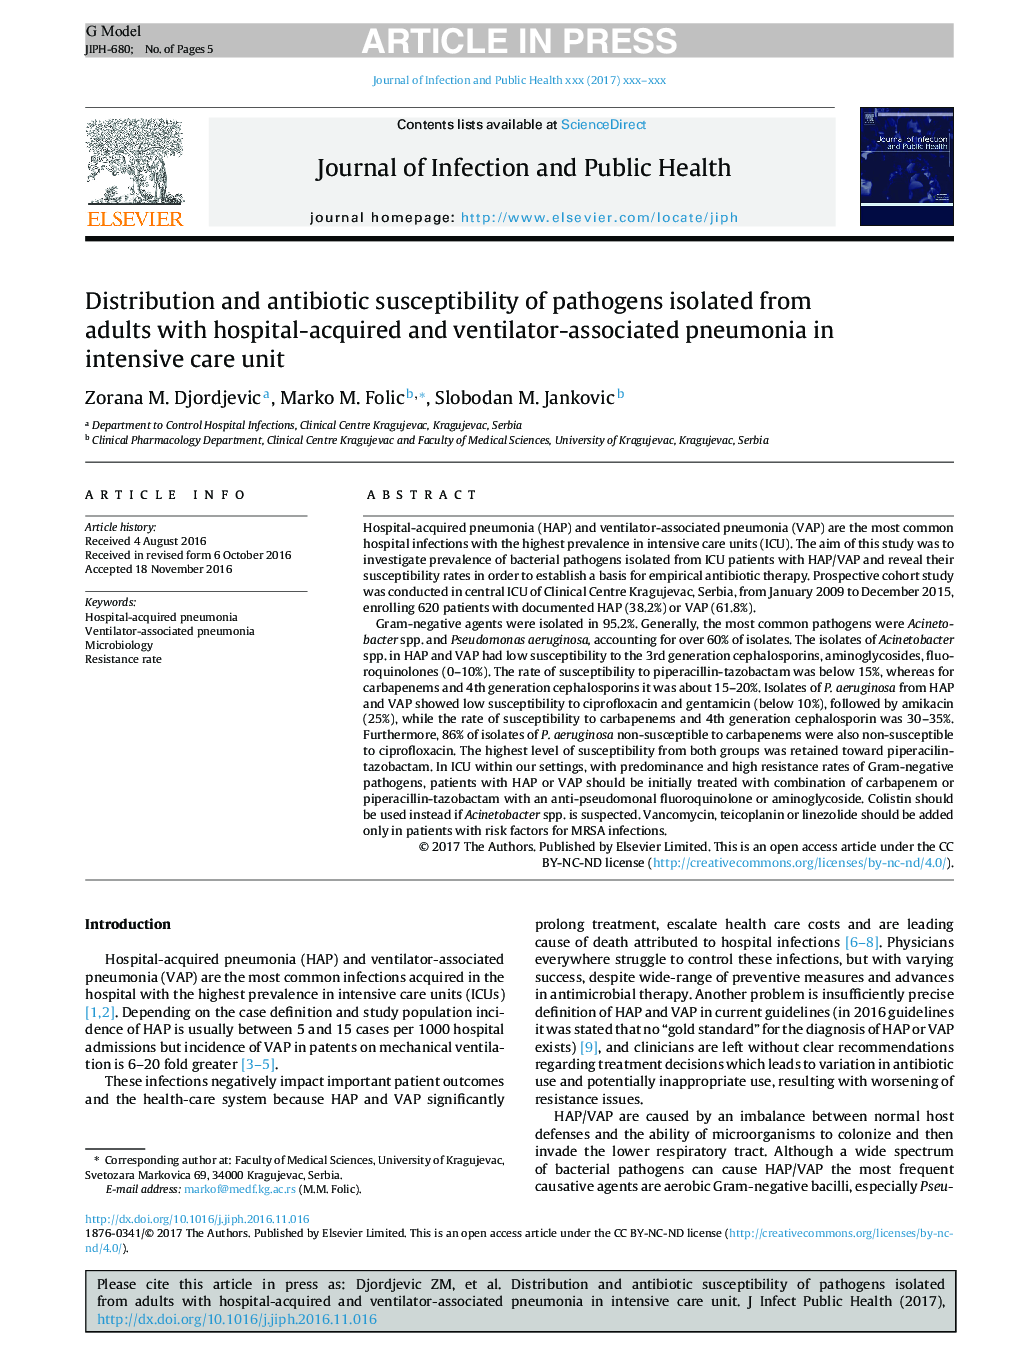 توزیع و حساسیت آنتی بیوتیک پاتوژن های جدا شده از بزرگسالان مبتلا به پنومونی مرتبط با بیمار و پنومونی در بخش مراقبت های ویژه 